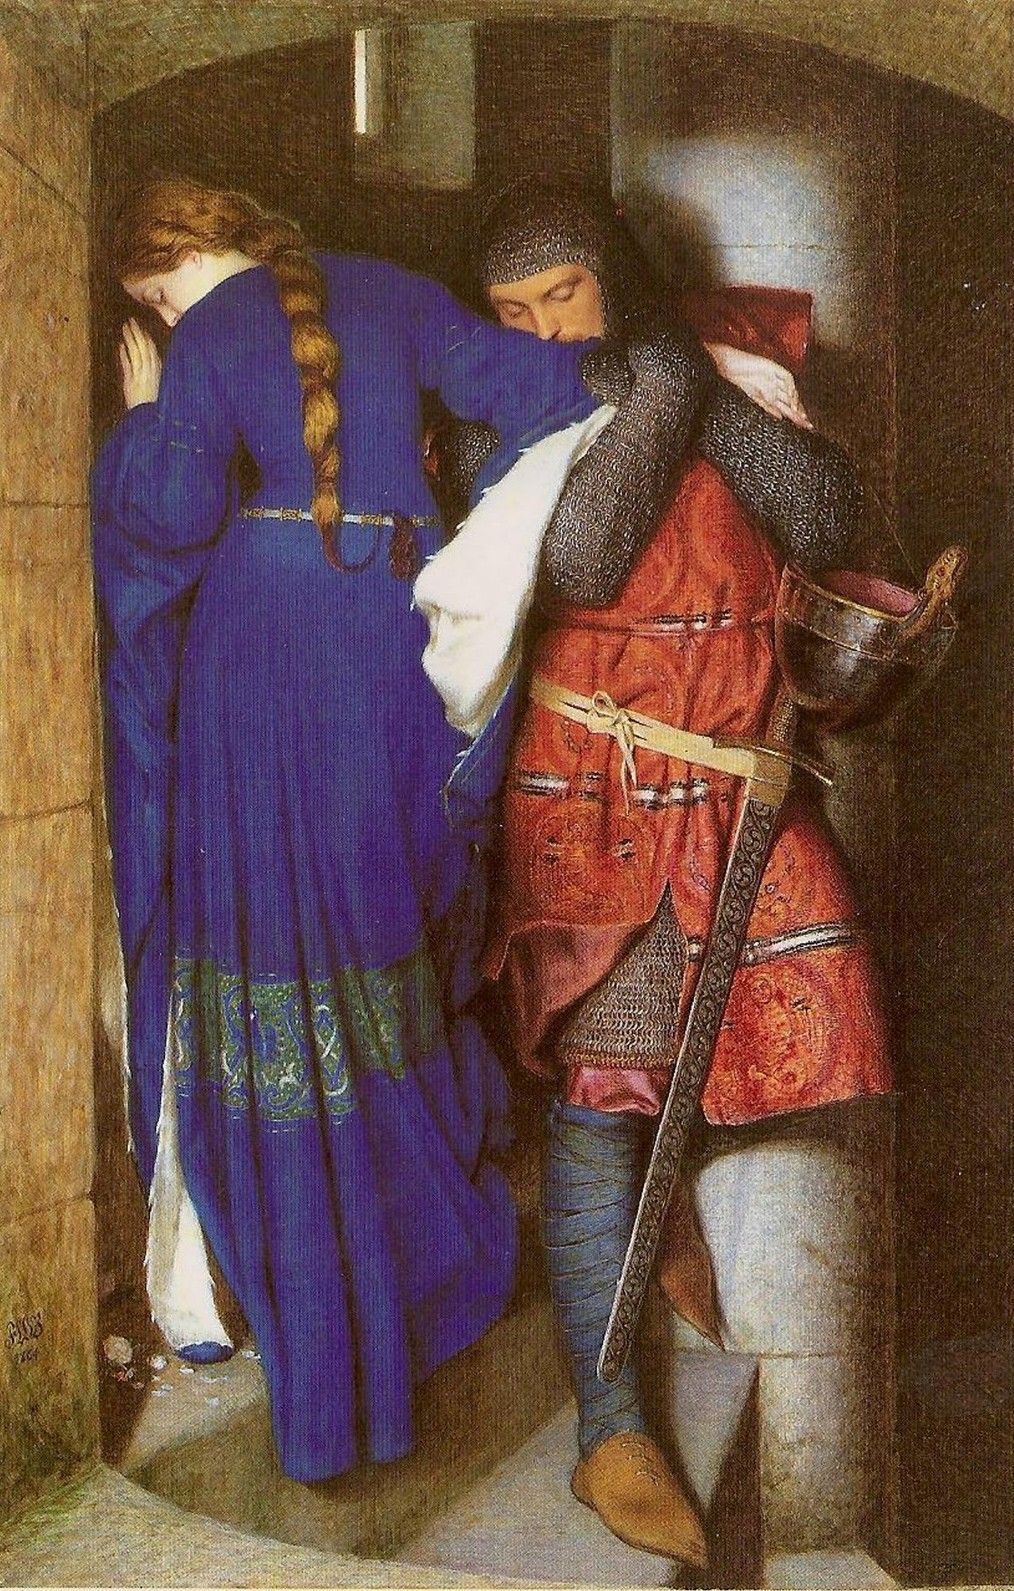 Merlin ostrzegał Artura, że "biała uwodzicielka" zdradzi go z najlepszym z jego rycerzy. Obraz Fredericka Williama Burtona "Hellelil i Hildebrand, spotkanie na schodach wieży", 1864 r.